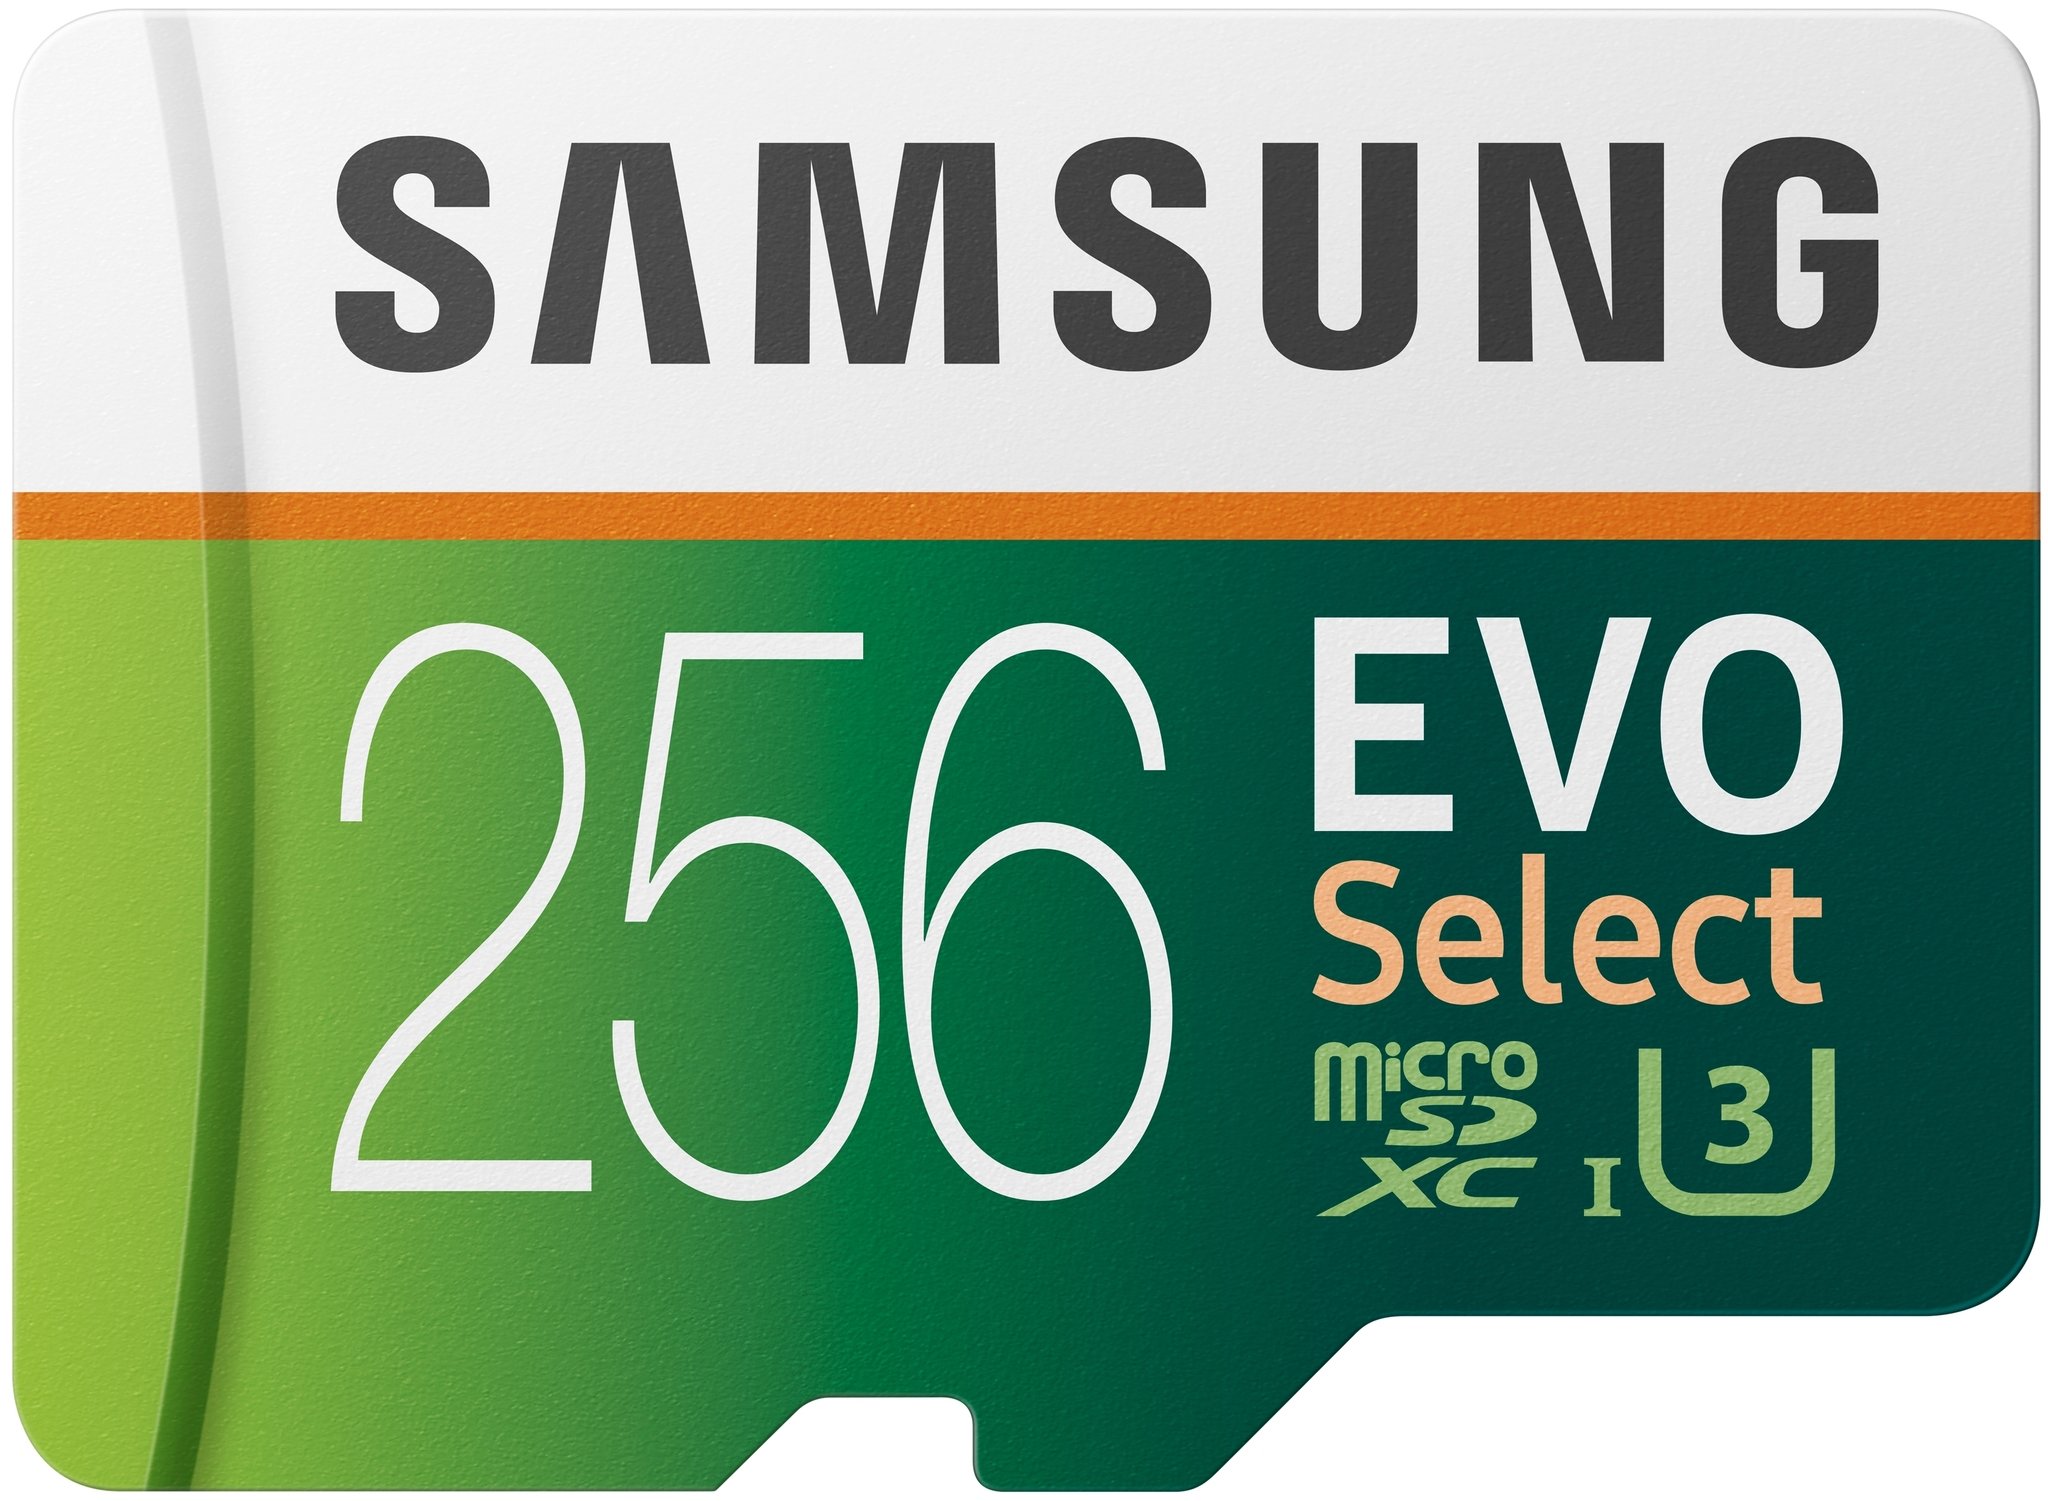 Samsung Evo 256 Gb